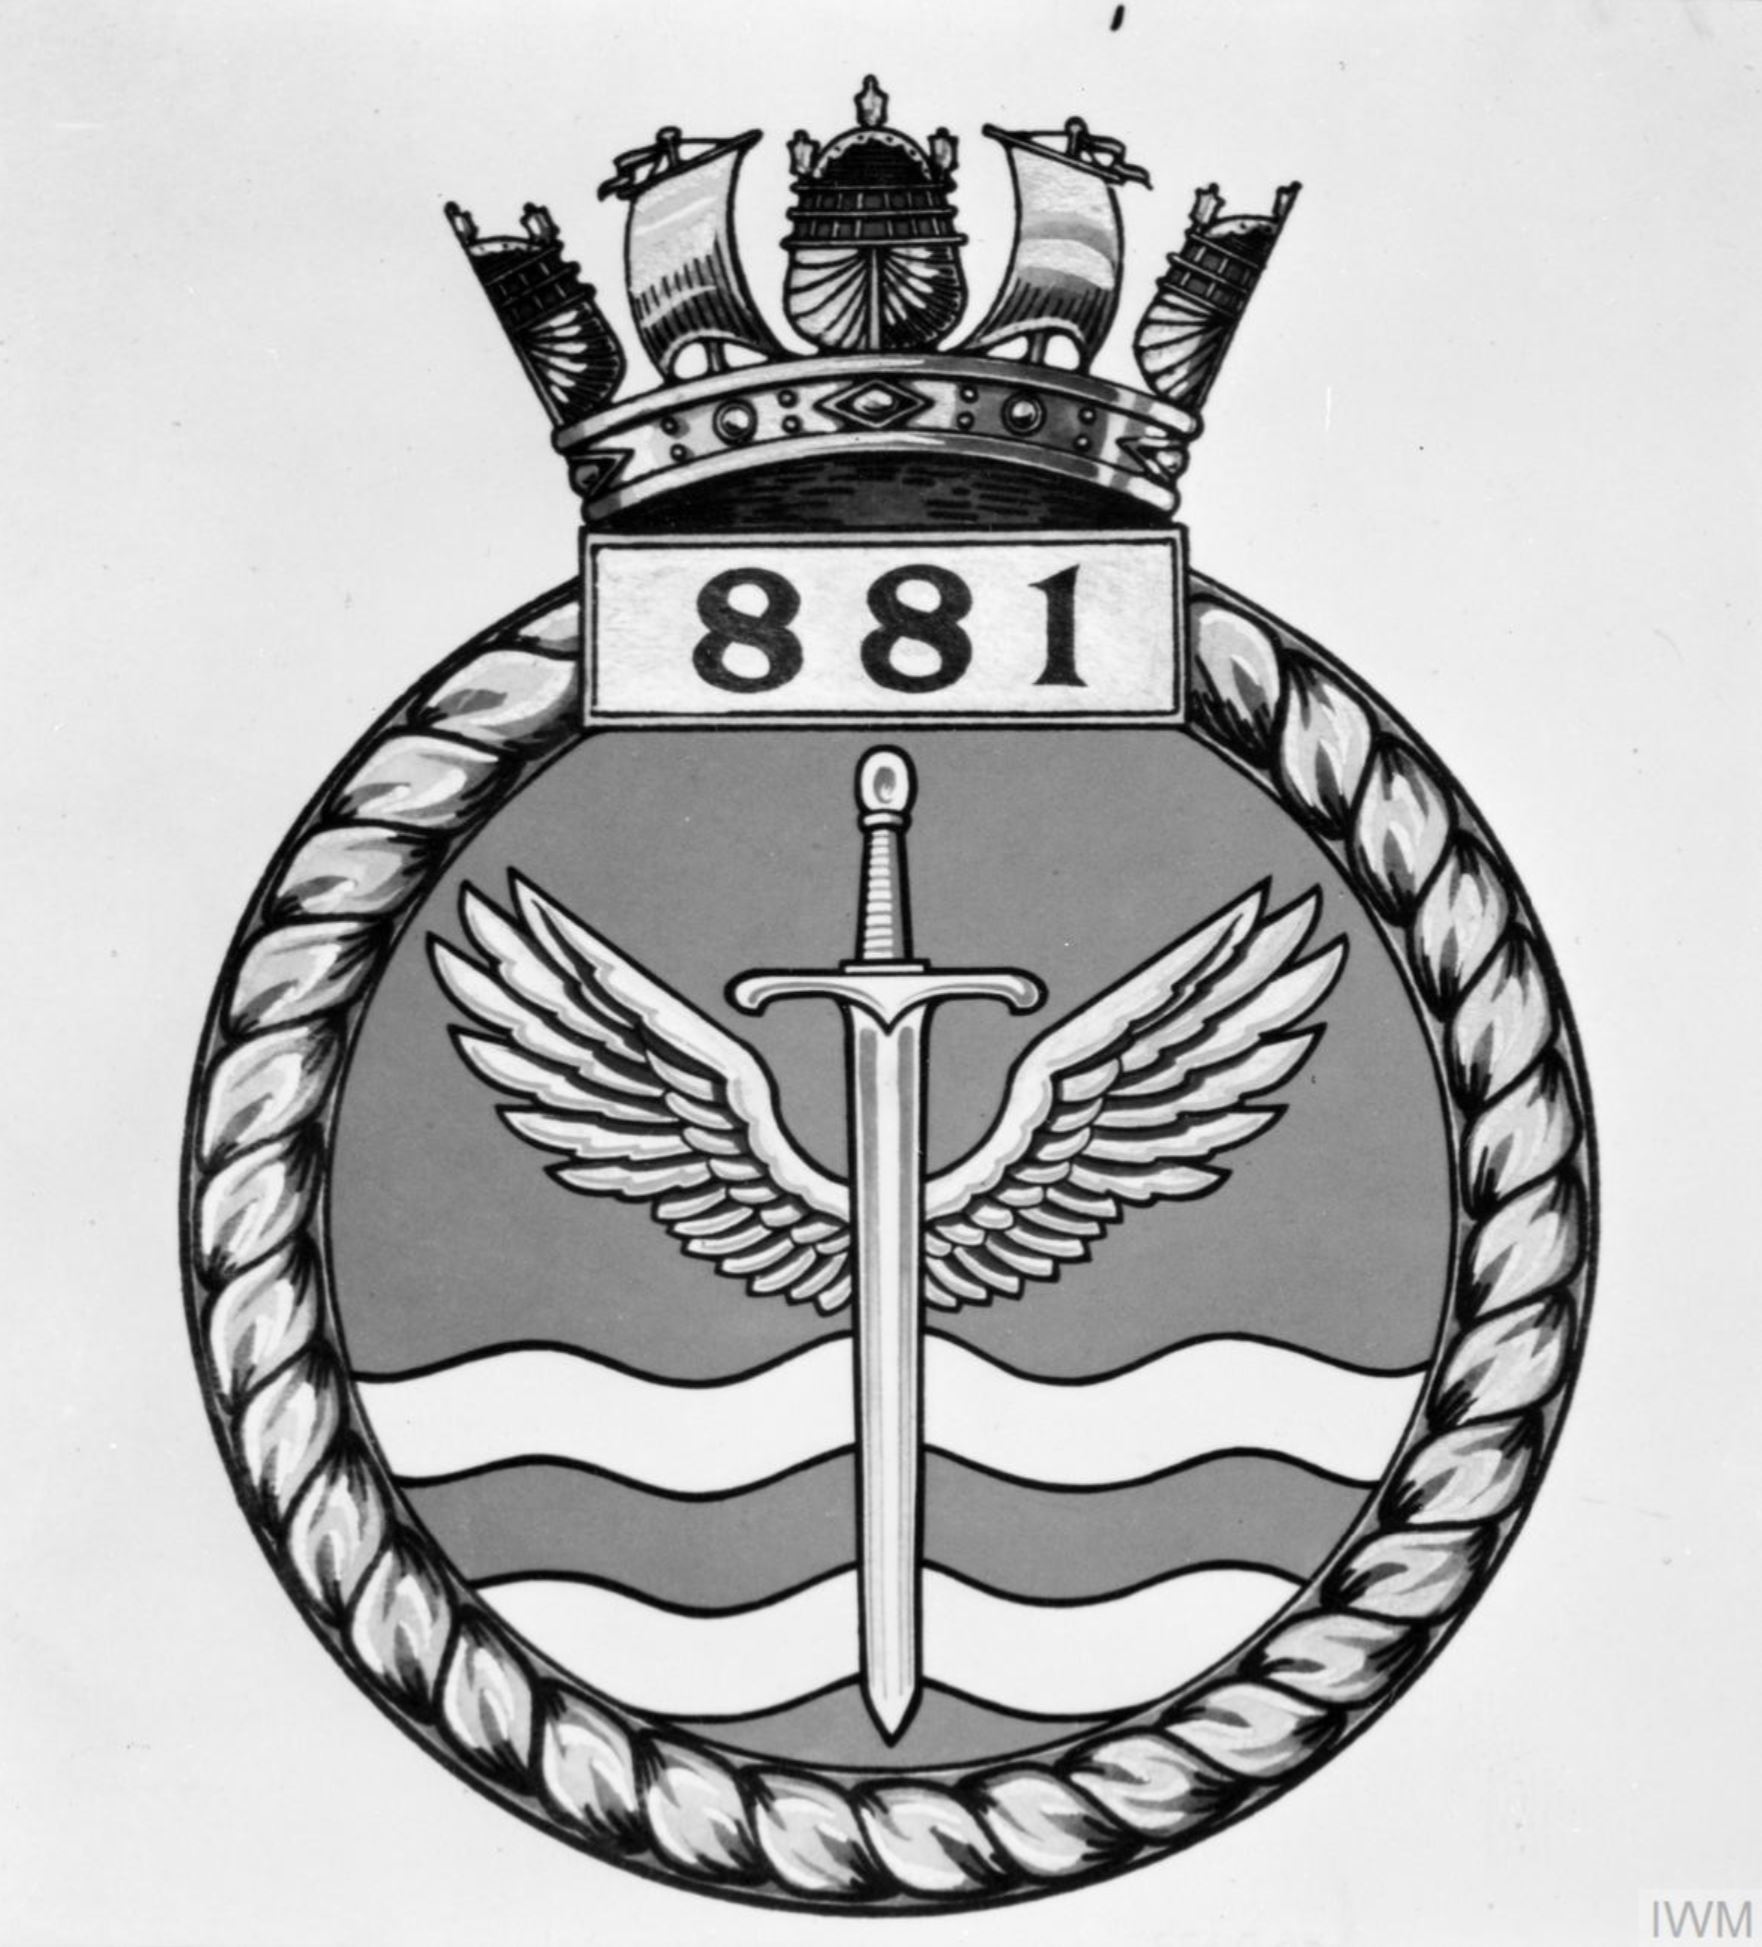 Fleet Air Arm crest of 881 Squadron IWM A31104